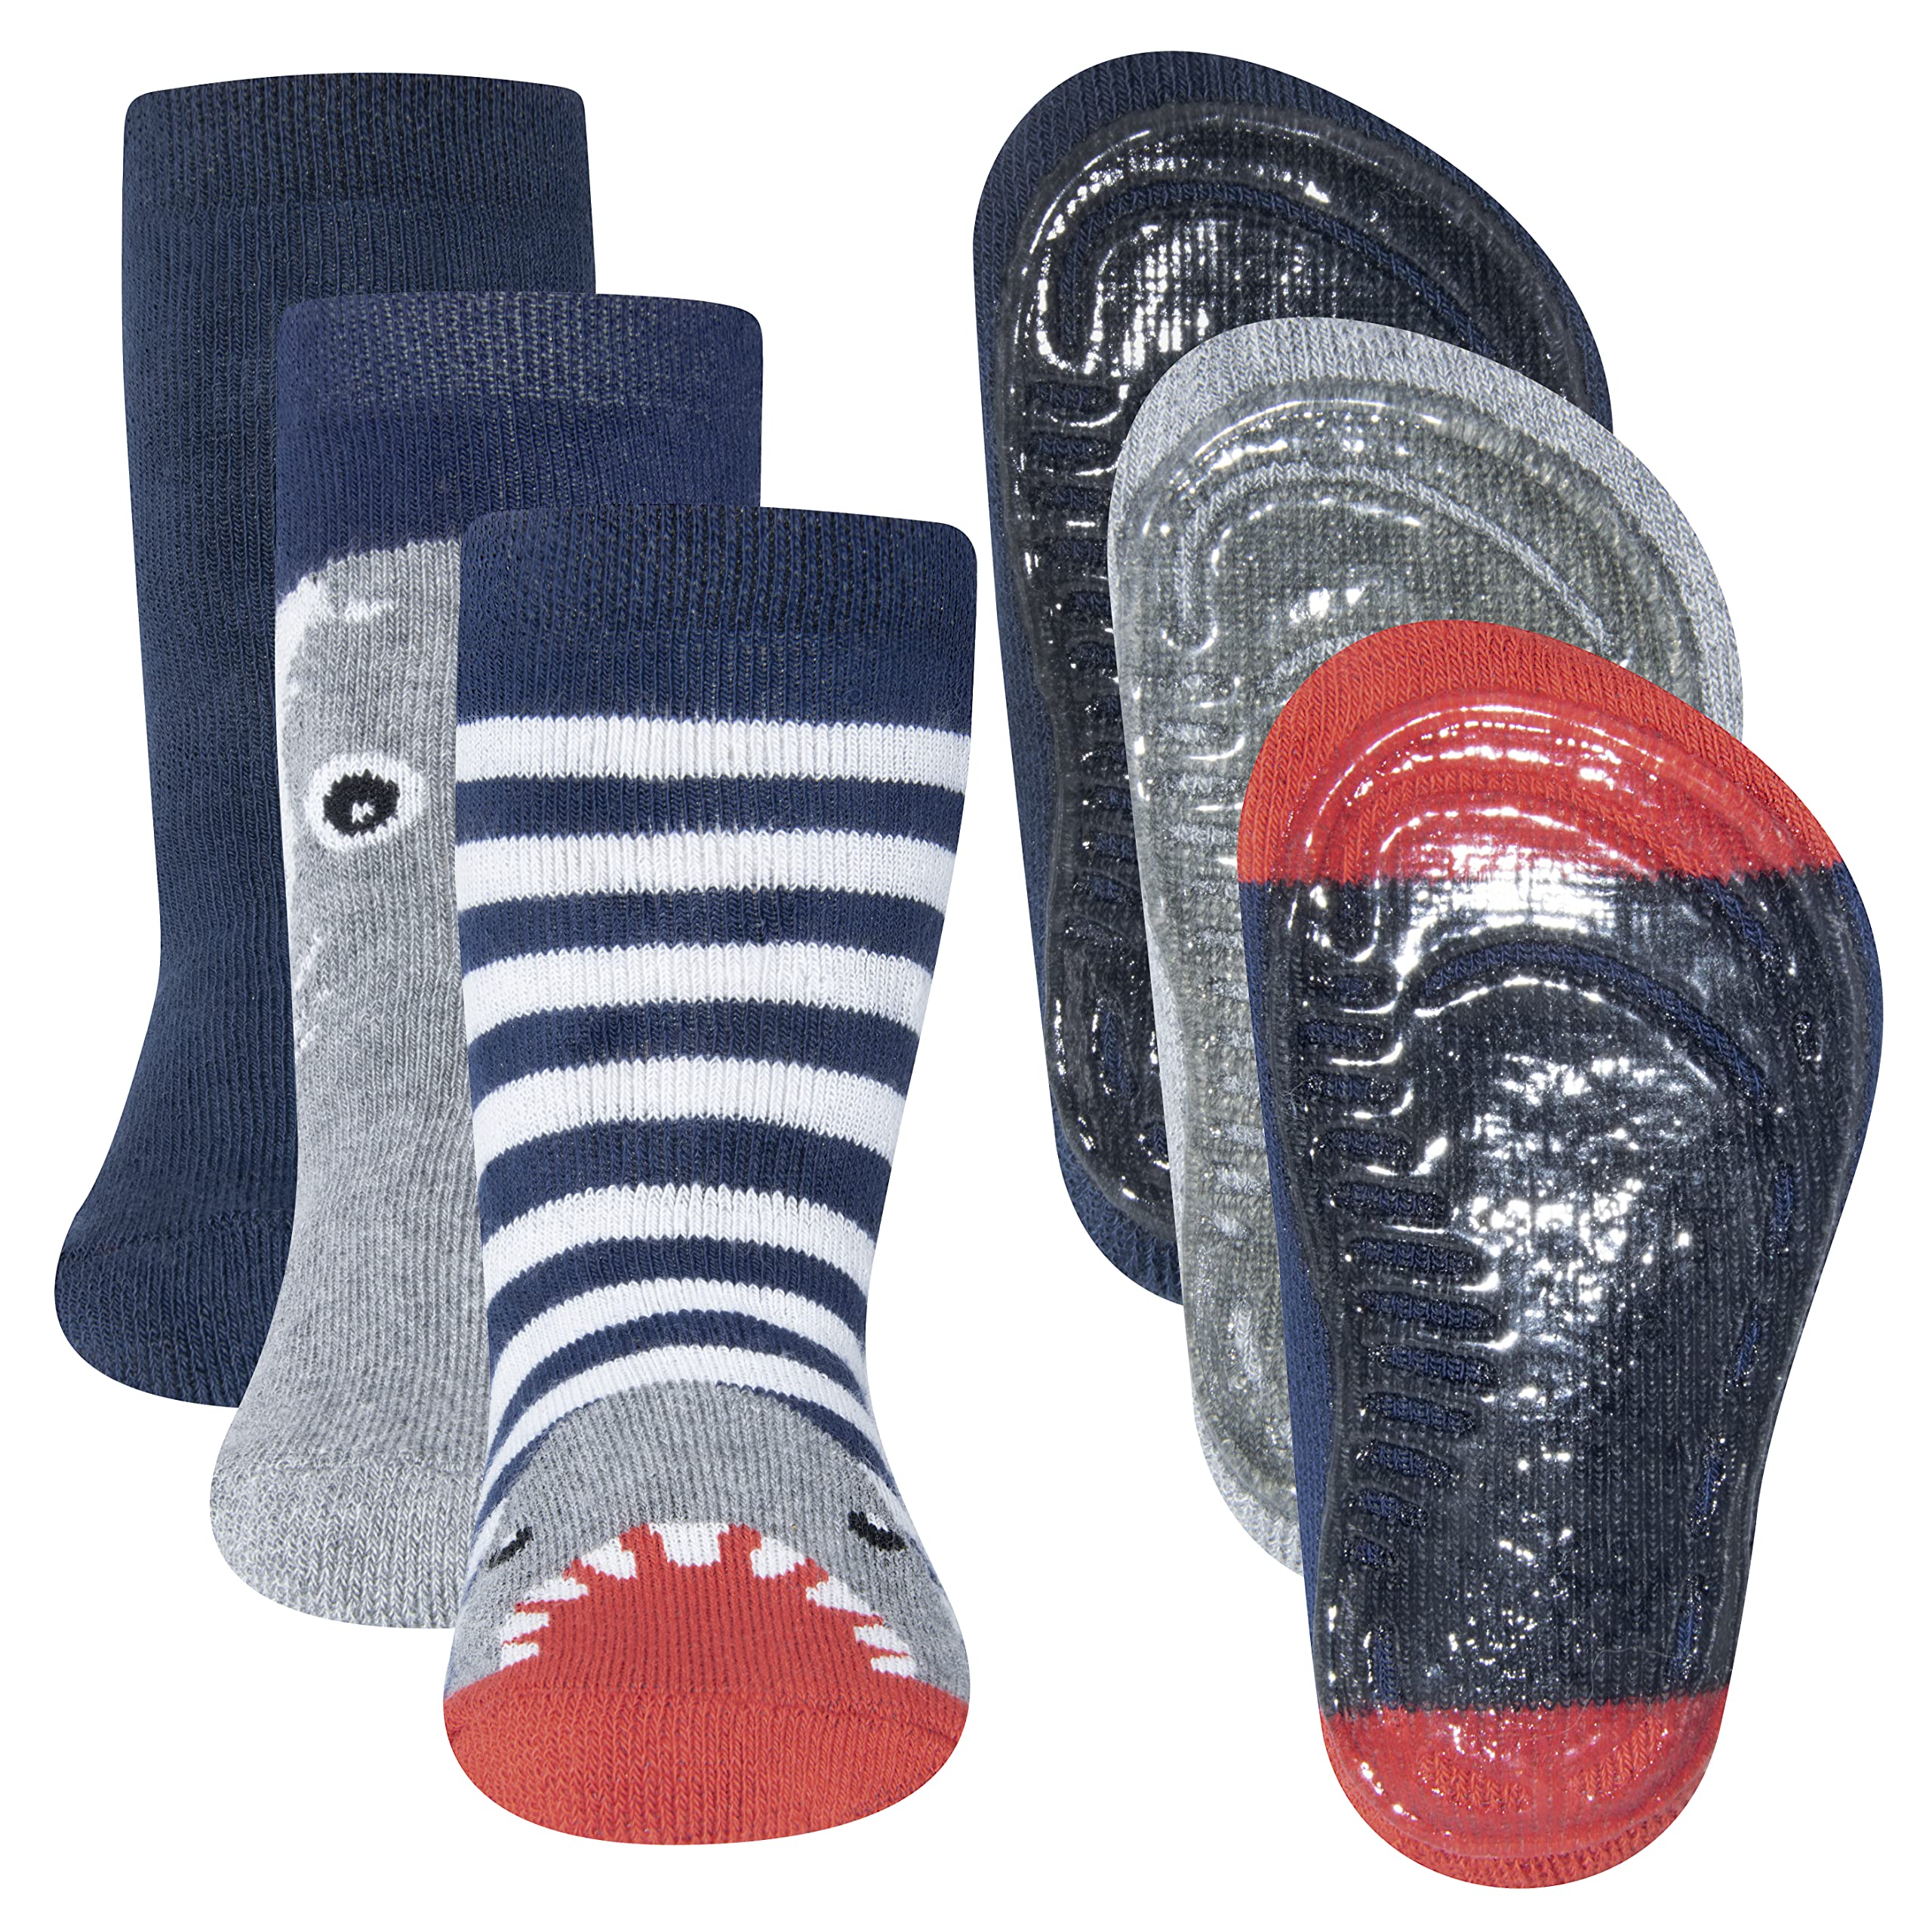 EWERS 3er-Pack Haifisch Stoppersocken SoftStep, Socken mit Antirutschsohle für Jungen, Anti-Rutsch-Socken mit Gummisohle, MADE IN GERMANY, 3 Paar rutschfeste Kindersocken für Jungs, Größe 25-26